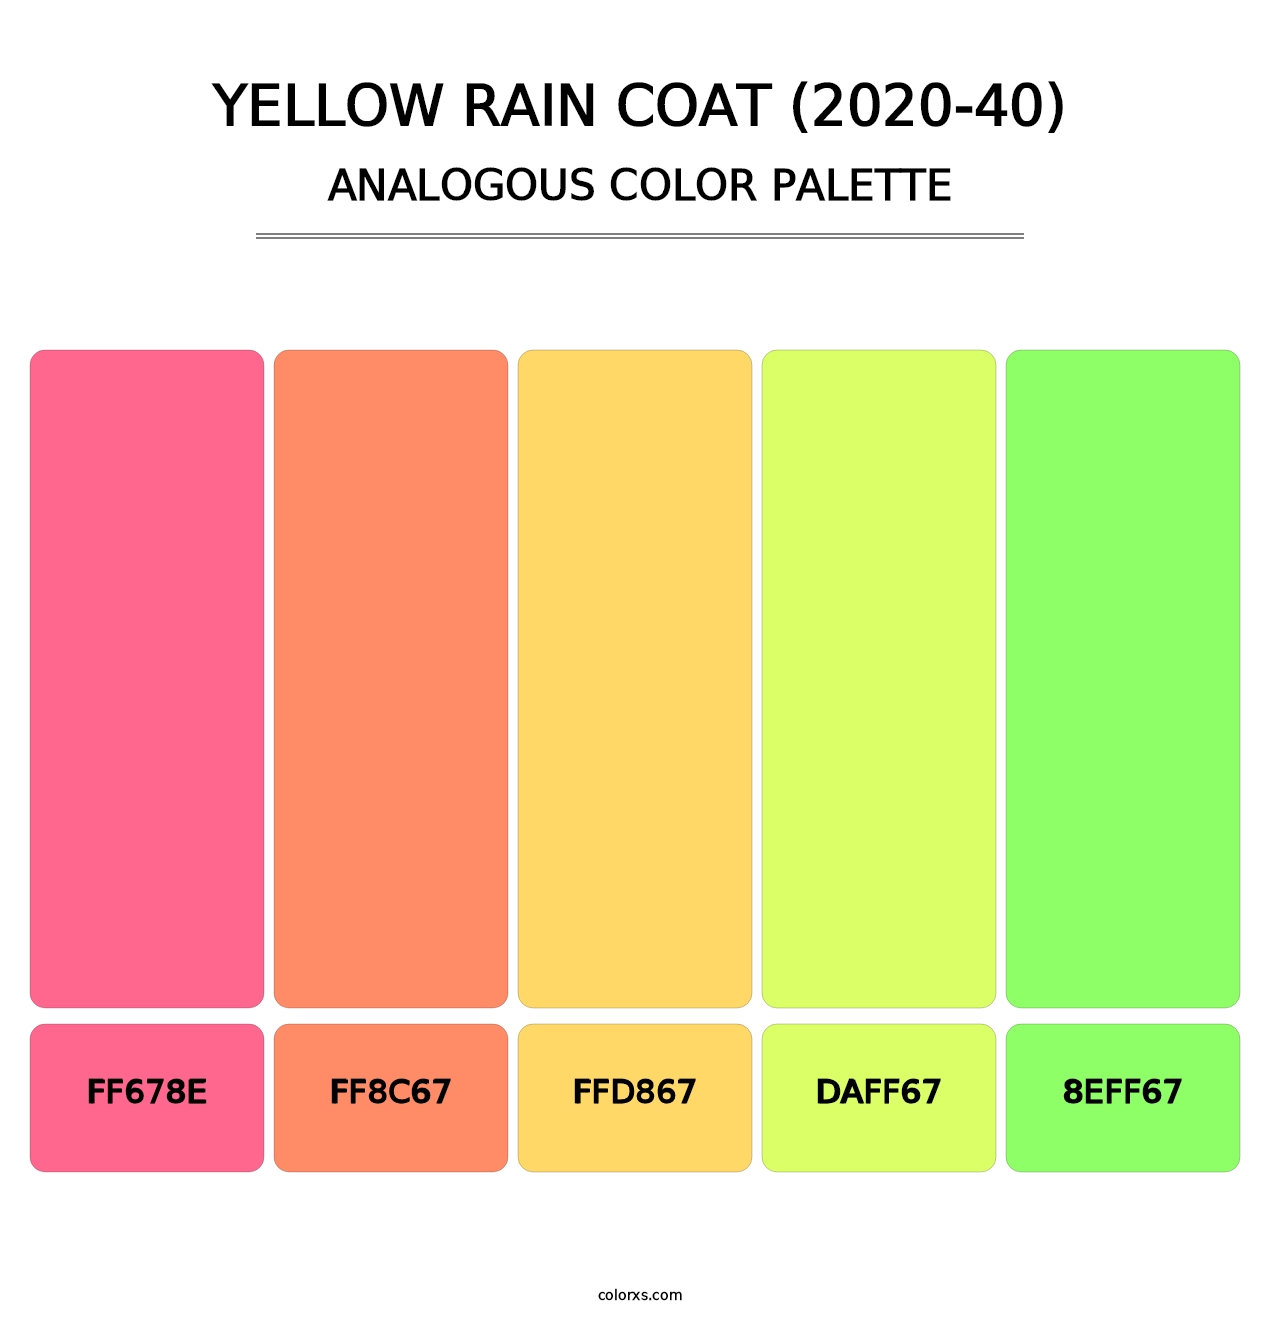 Yellow Rain Coat (2020-40) - Analogous Color Palette